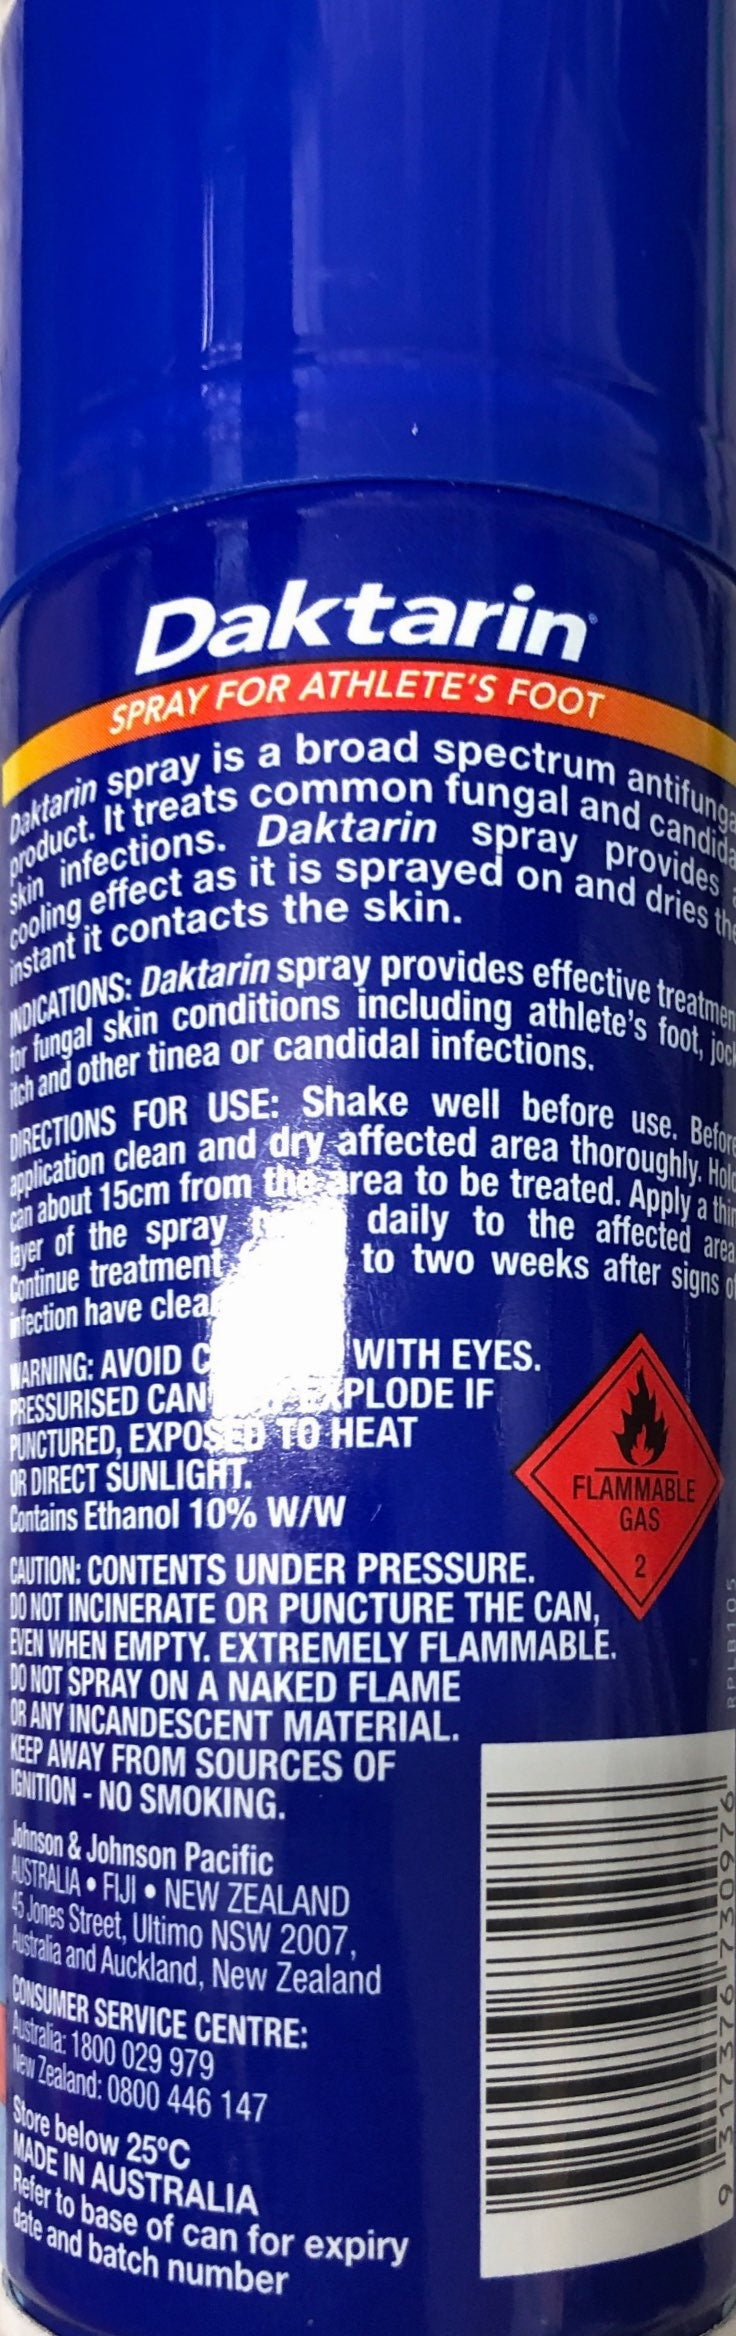 Daktarin Spray antifungal 100gm pharmacy medicine only - Pakuranga Pharmacy